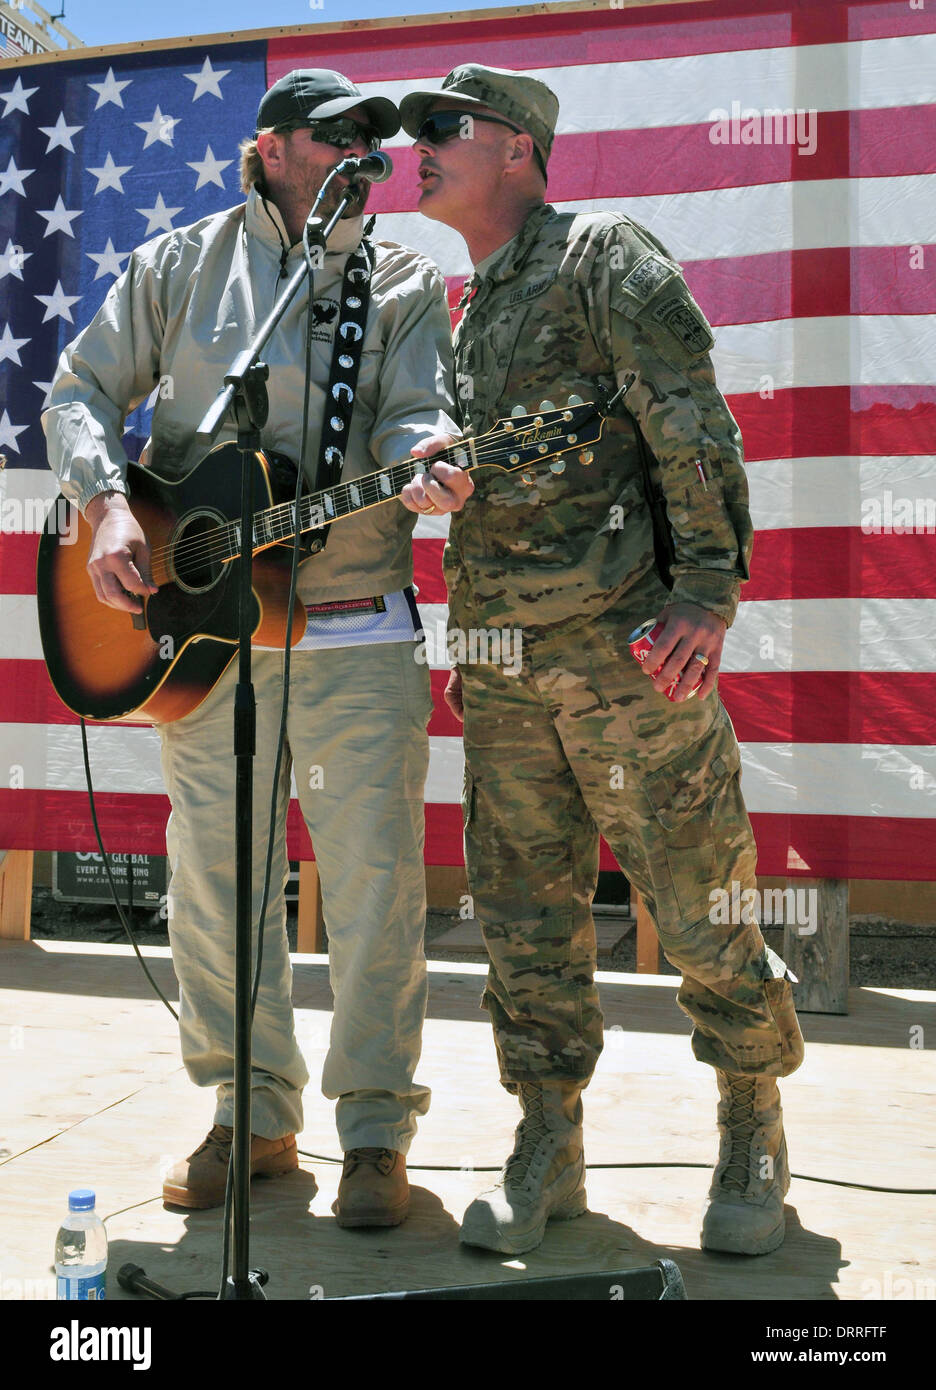 Country-Musik-Sänger Toby Keith für die Truppen während ein Überraschungskonzert 29. April 2012 auf Forward Operating Base Sharana in der Provinz Paktika, Afghanistan durchführt. Stockfoto